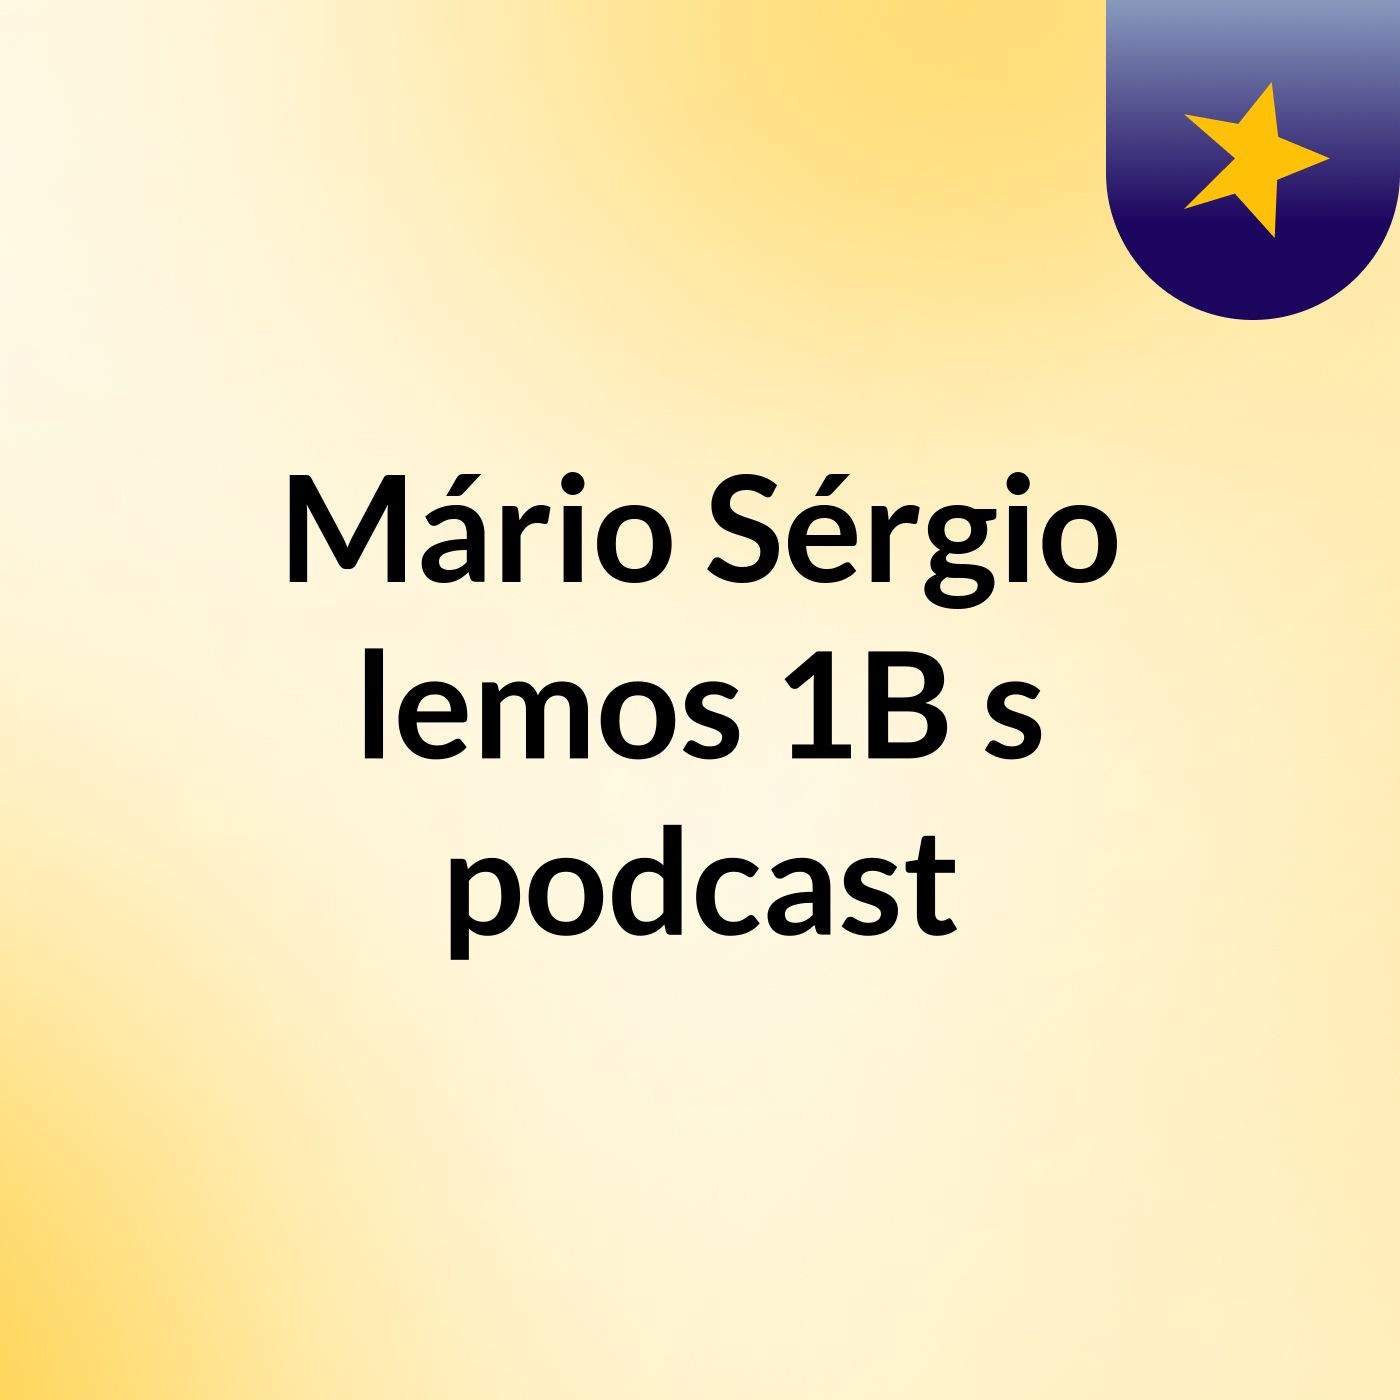 Mário Sérgio lemos 1B's podcast